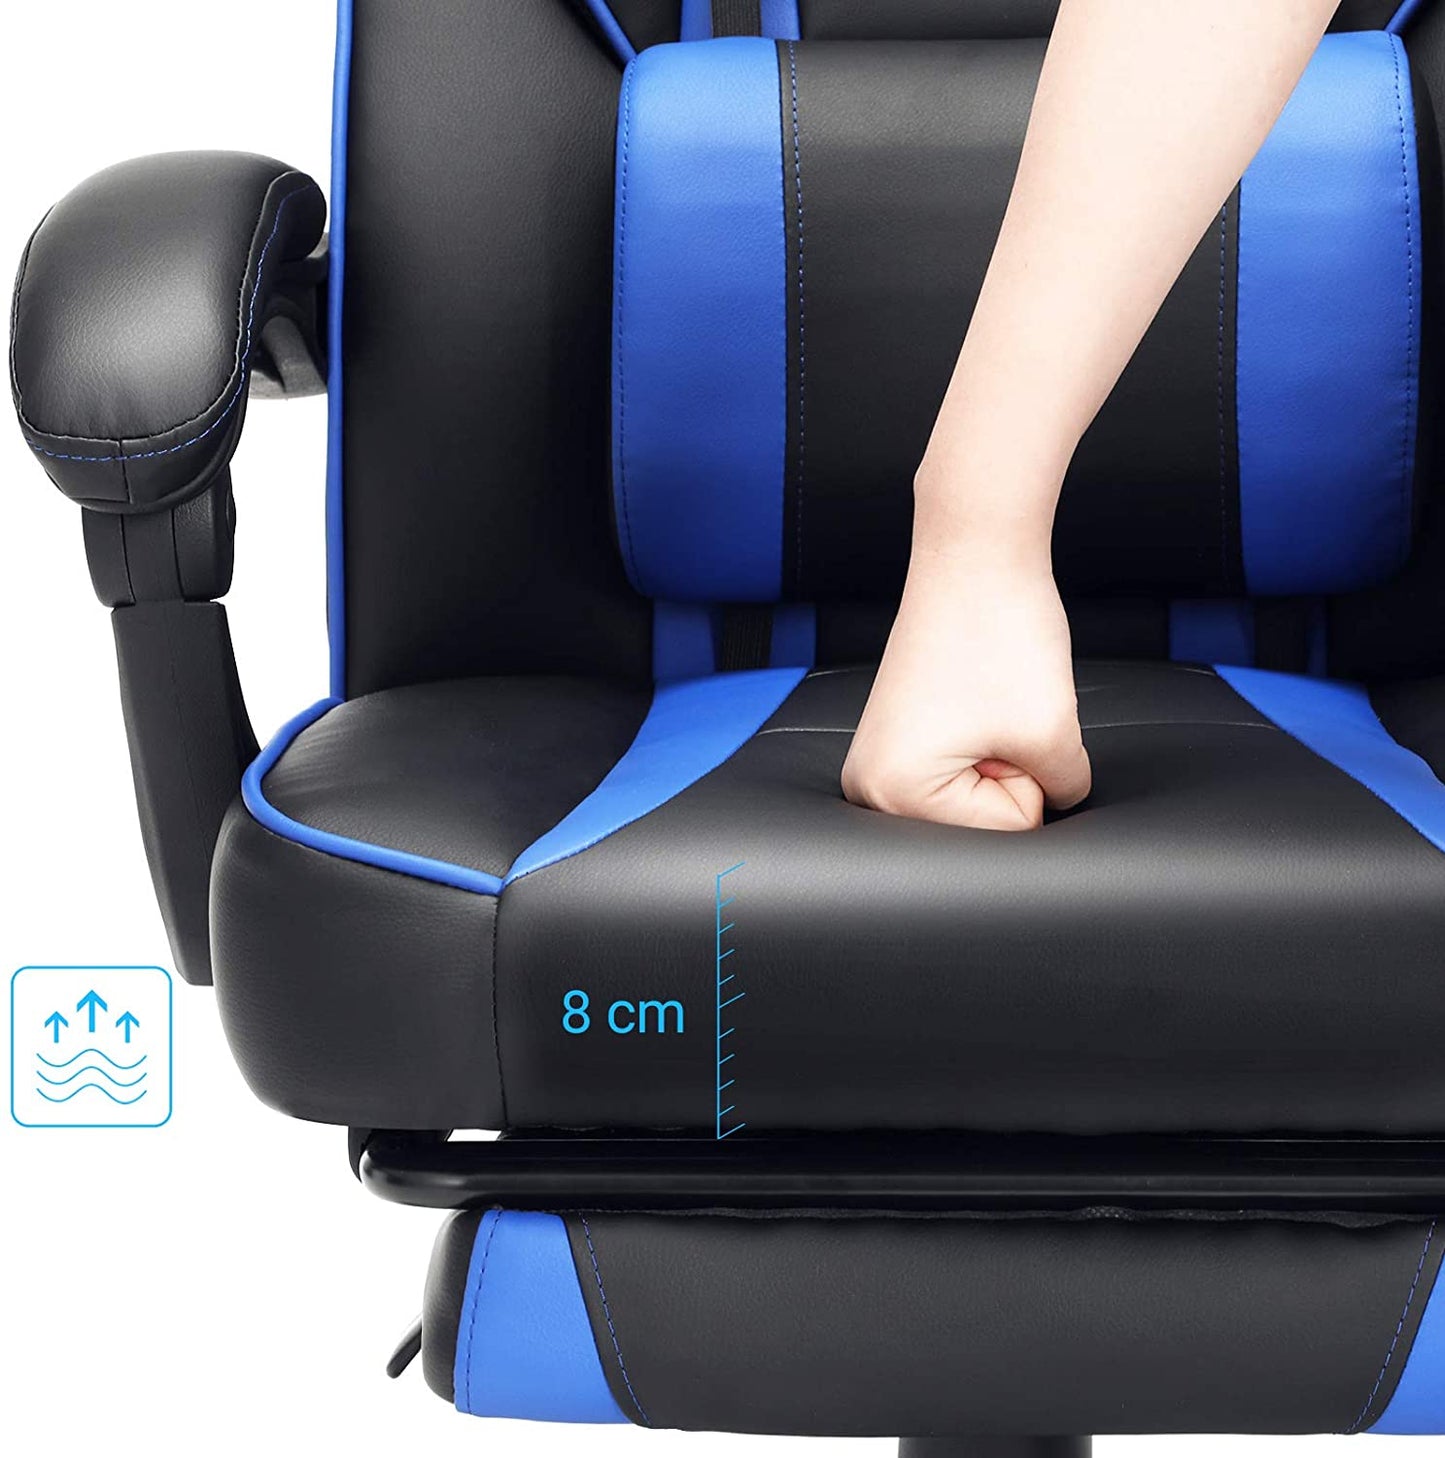 Chaise de bureau Nancy's Hayburn - Chaise pivotante - Simili cuir - Repose-pieds - Appui-tête - Coussin lombaire - Hauteur réglable - Ergonomique - Noir - Bleu - 67 x 66 x (116-126) cm 